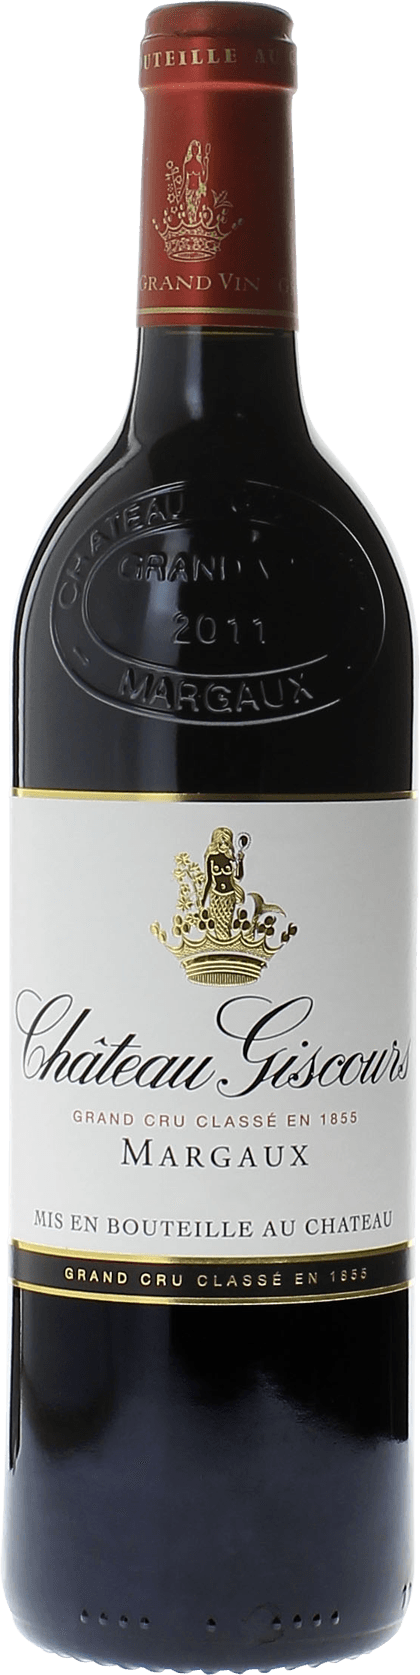 Giscours 2014 3me Grand cru class Margaux, Bordeaux rouge